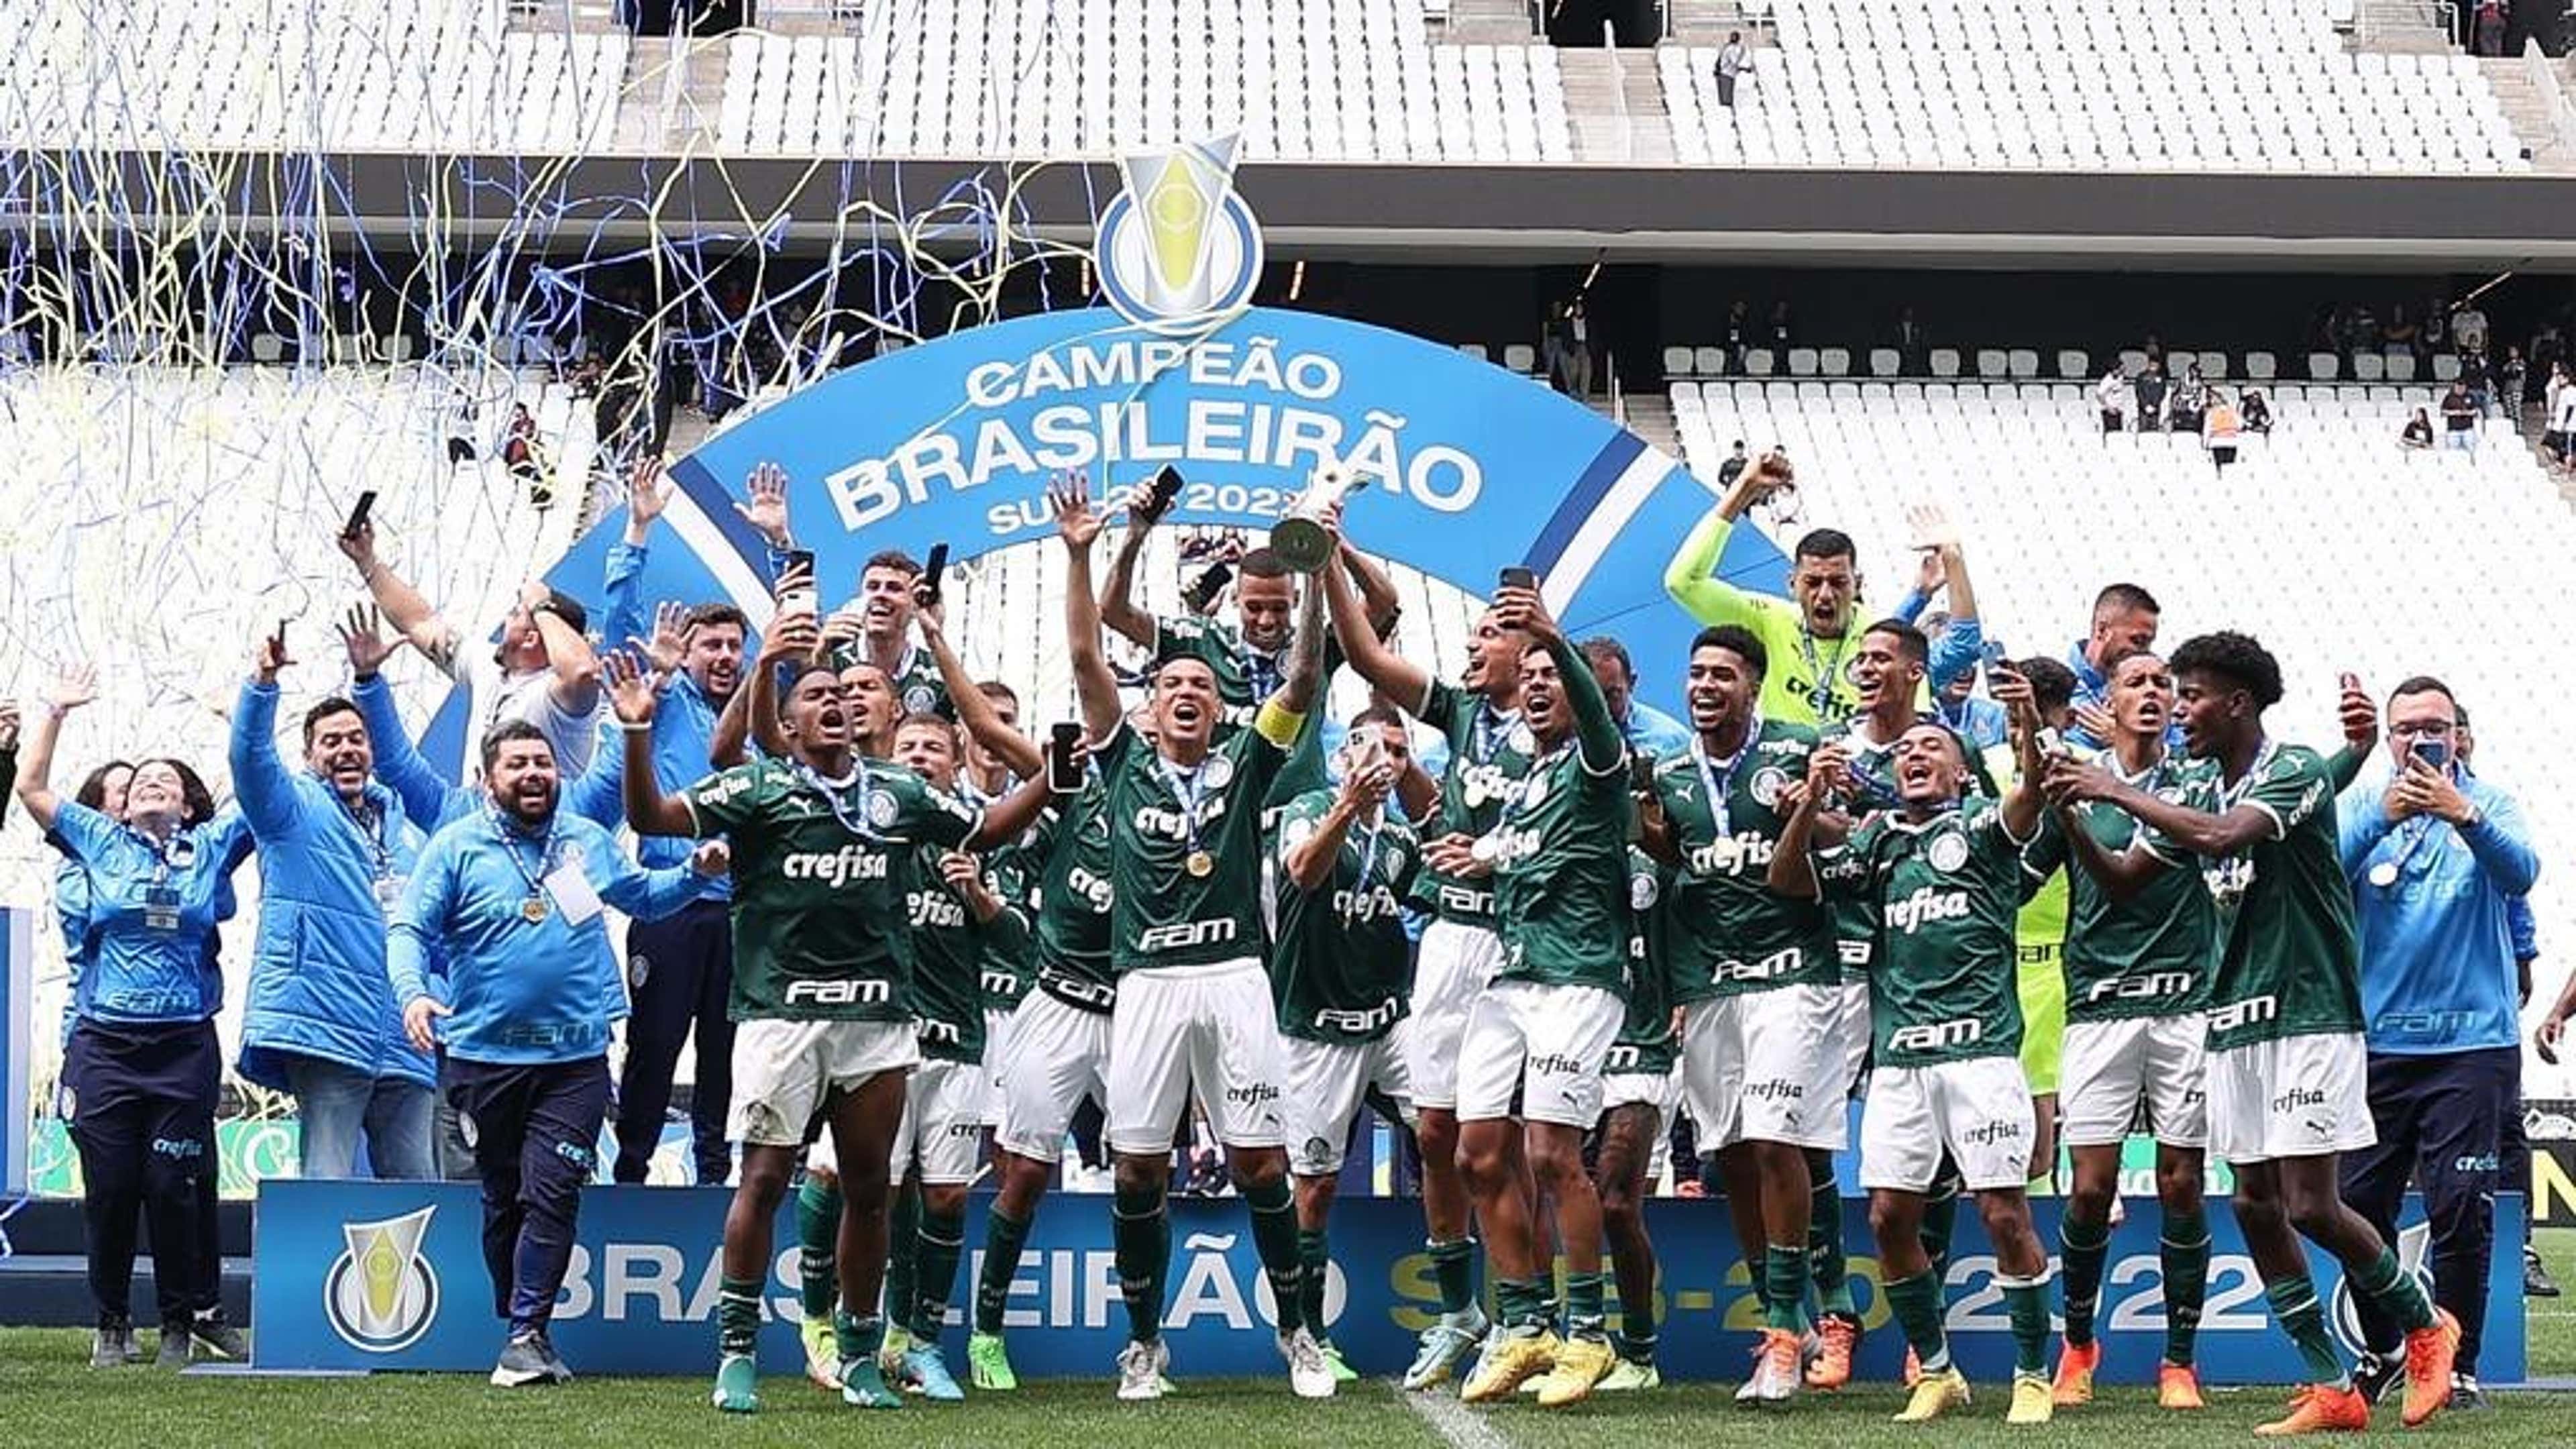 Nos pênaltis, Palmeiras perde título do Brasileirão Sub-20 - PTD